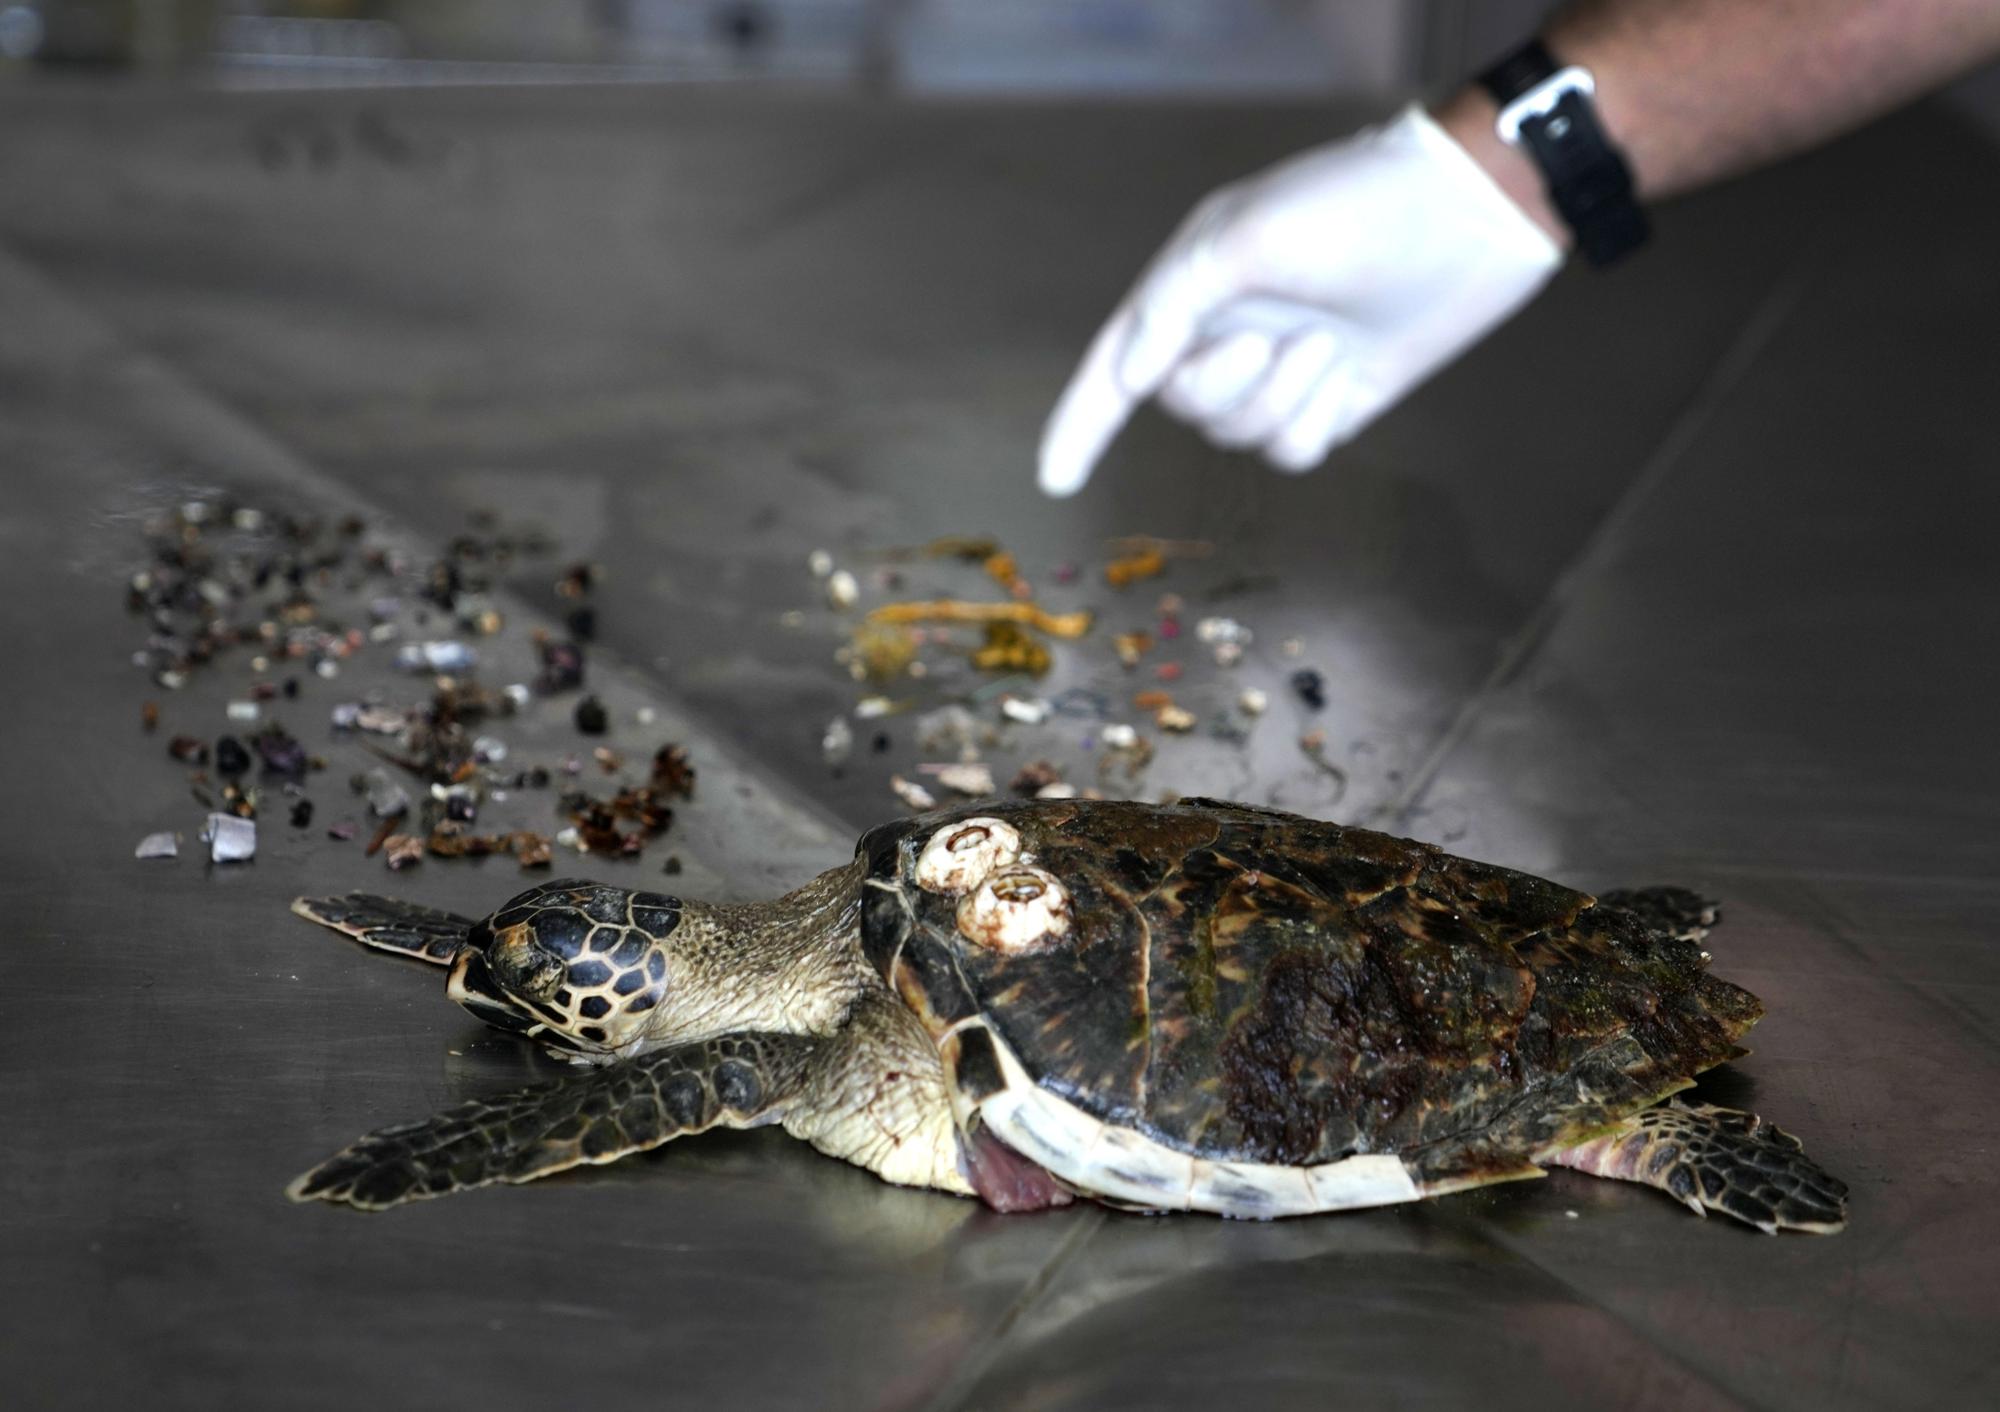 Một con rùa biển Hawksbill, được tìm thấy đã chết trên một bãi biển gần đó, và được trưng bày tại phòng thí nghiệm của Trung tâm Bảo tồn Al Hefaiyah thuộc thành phố Kalba (trên bờ biển phía đông của Các Tiểu vương quốc Ả Rập Thống nhất), sau khi khám nghiệm tử thi cho thấy nó đã nuốt nhiều rác thải, chủ yếu là vật liệu nhựa. Ảnh chụp ngày 1/2/2022s. Điều đáng kinh ngạc là 75% tổng số rùa xanh đã chết và 57% tổng số rùa biển ở Sharjah đã ăn các mảnh vụn ở biển, bao gồm cả túi nhựa, nắp chai, dây thừng và lưới đánh cá, theo một nghiên cứu mới được công bố trên tạp chí Marine Pollution Bulletin